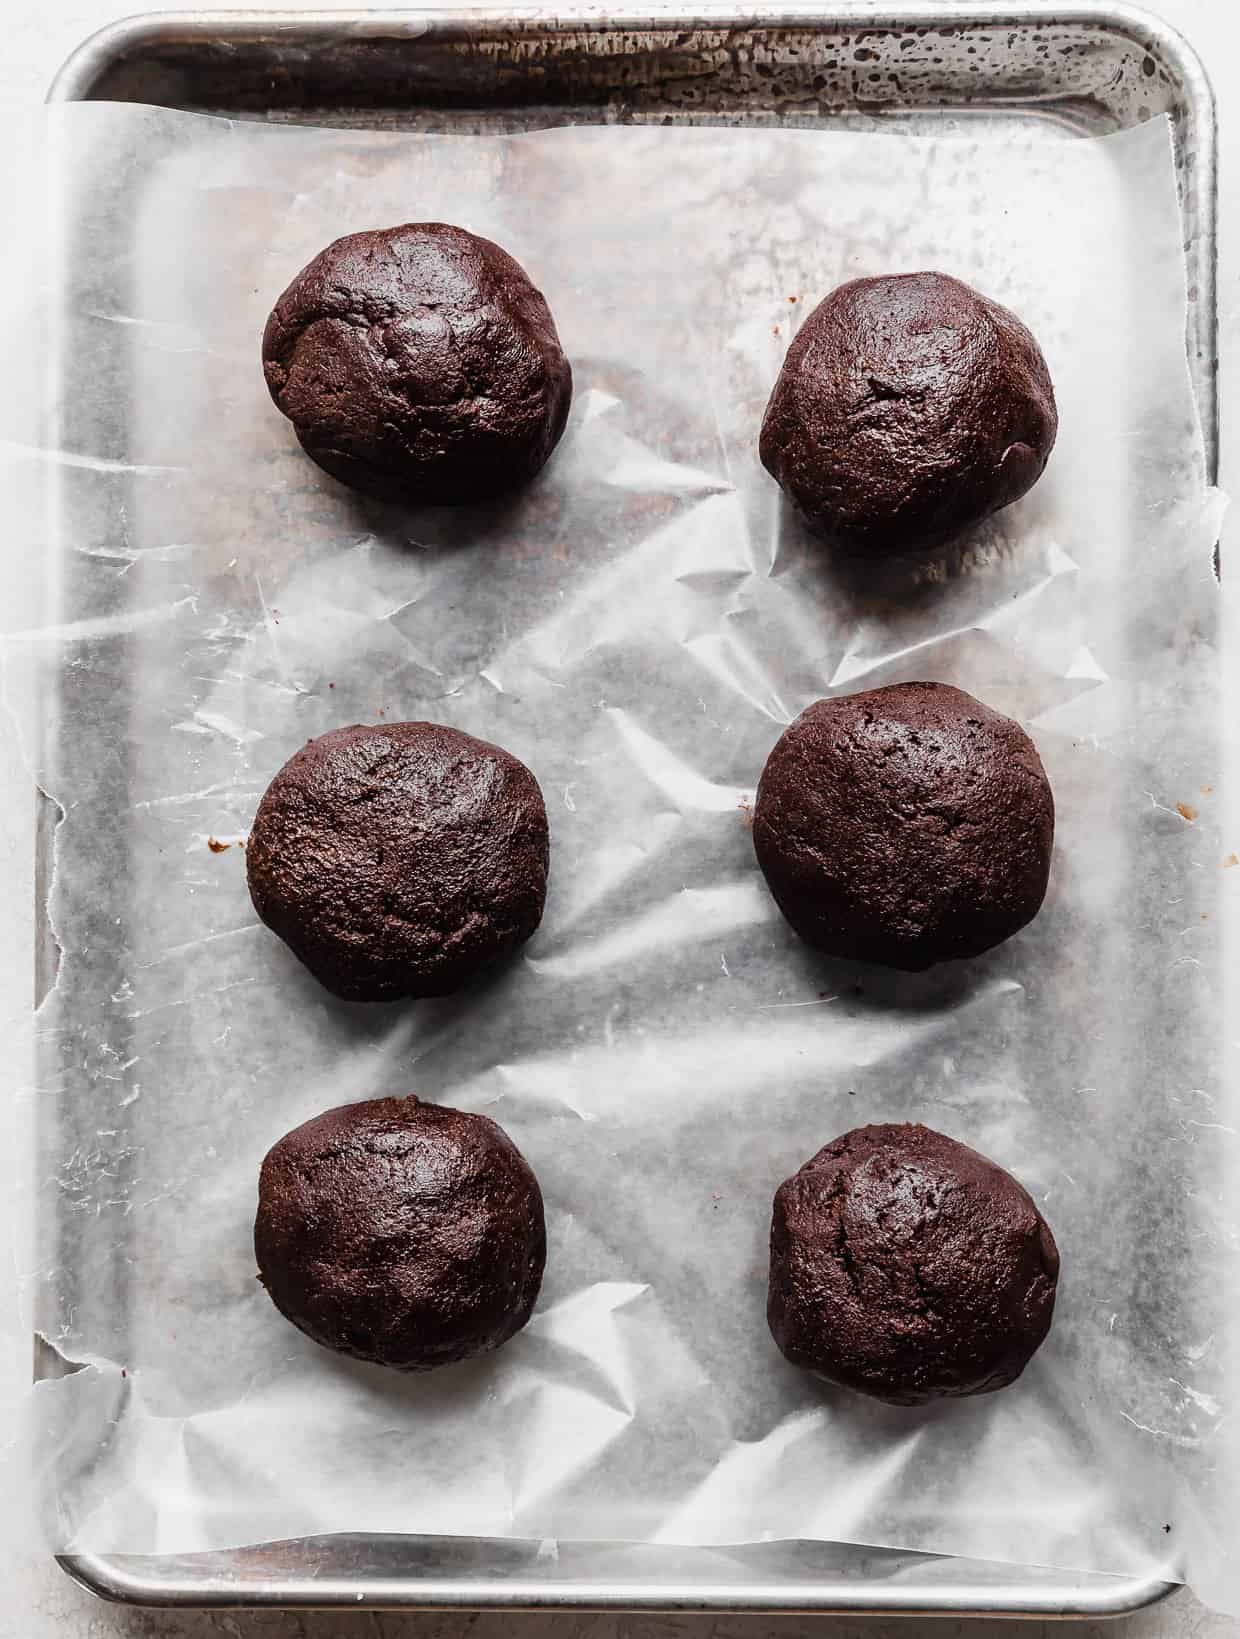 Six Crumbl Molten Lava Cookie dough balls on a wax paper lined baking sheet.